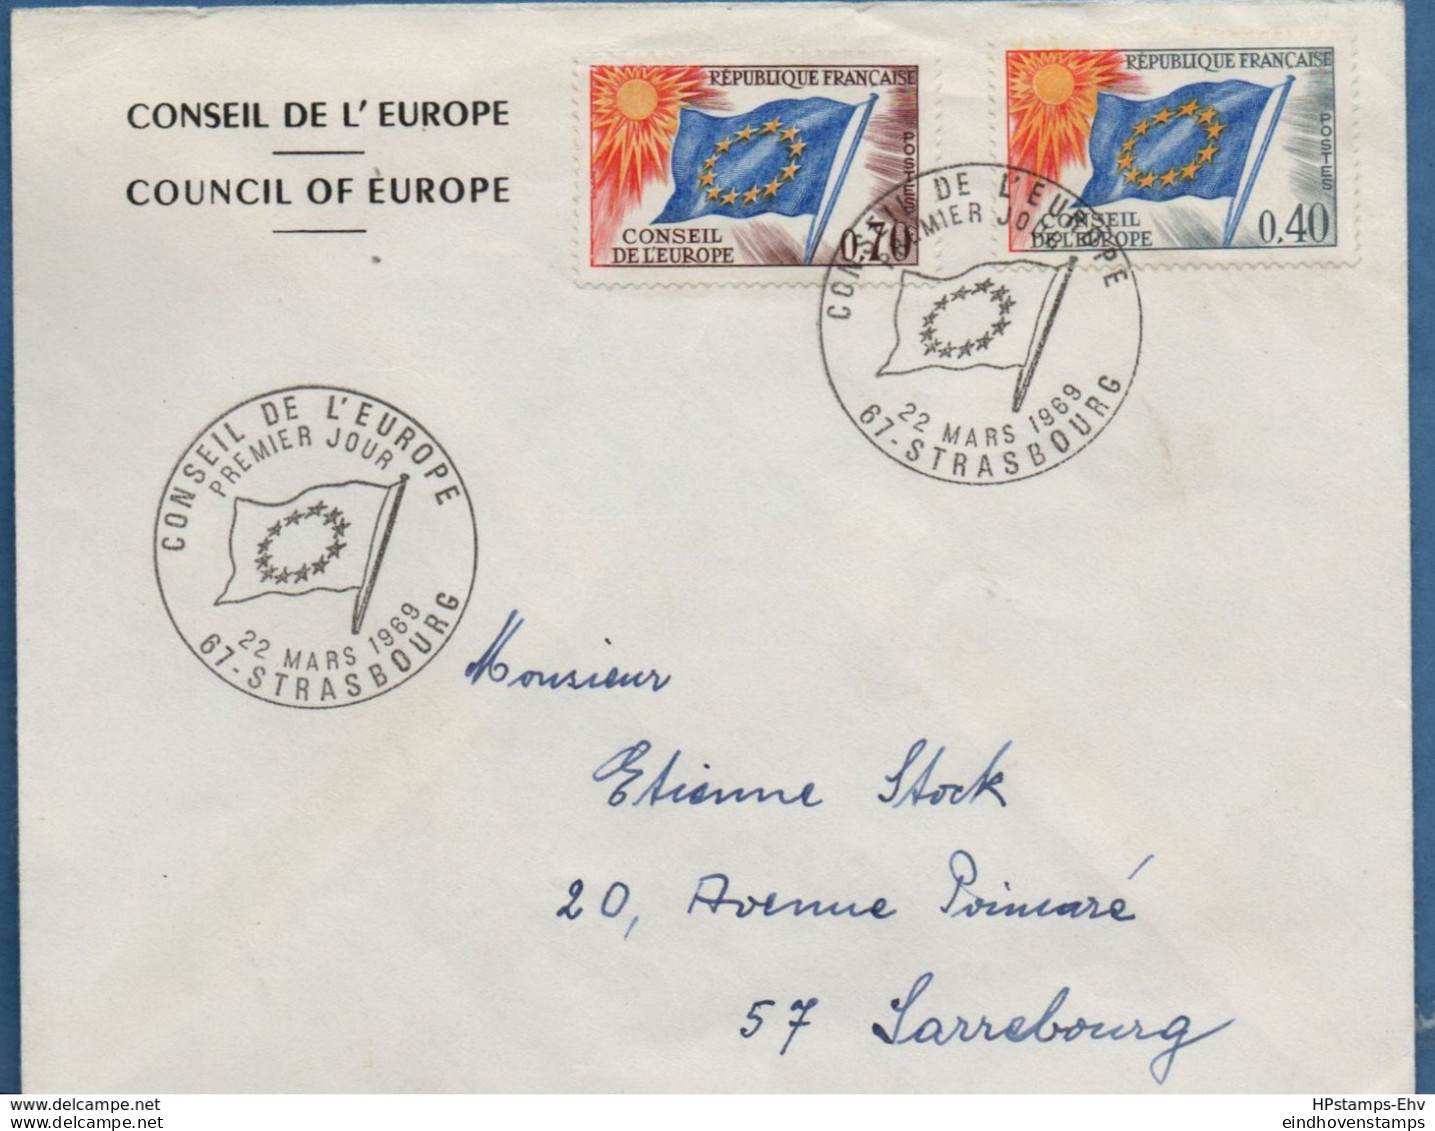 France 1969, Conseil De L'Europe 0.40 & 0.70 Sur FDC 22 Mars 1969 - 2009.0432 - 1969